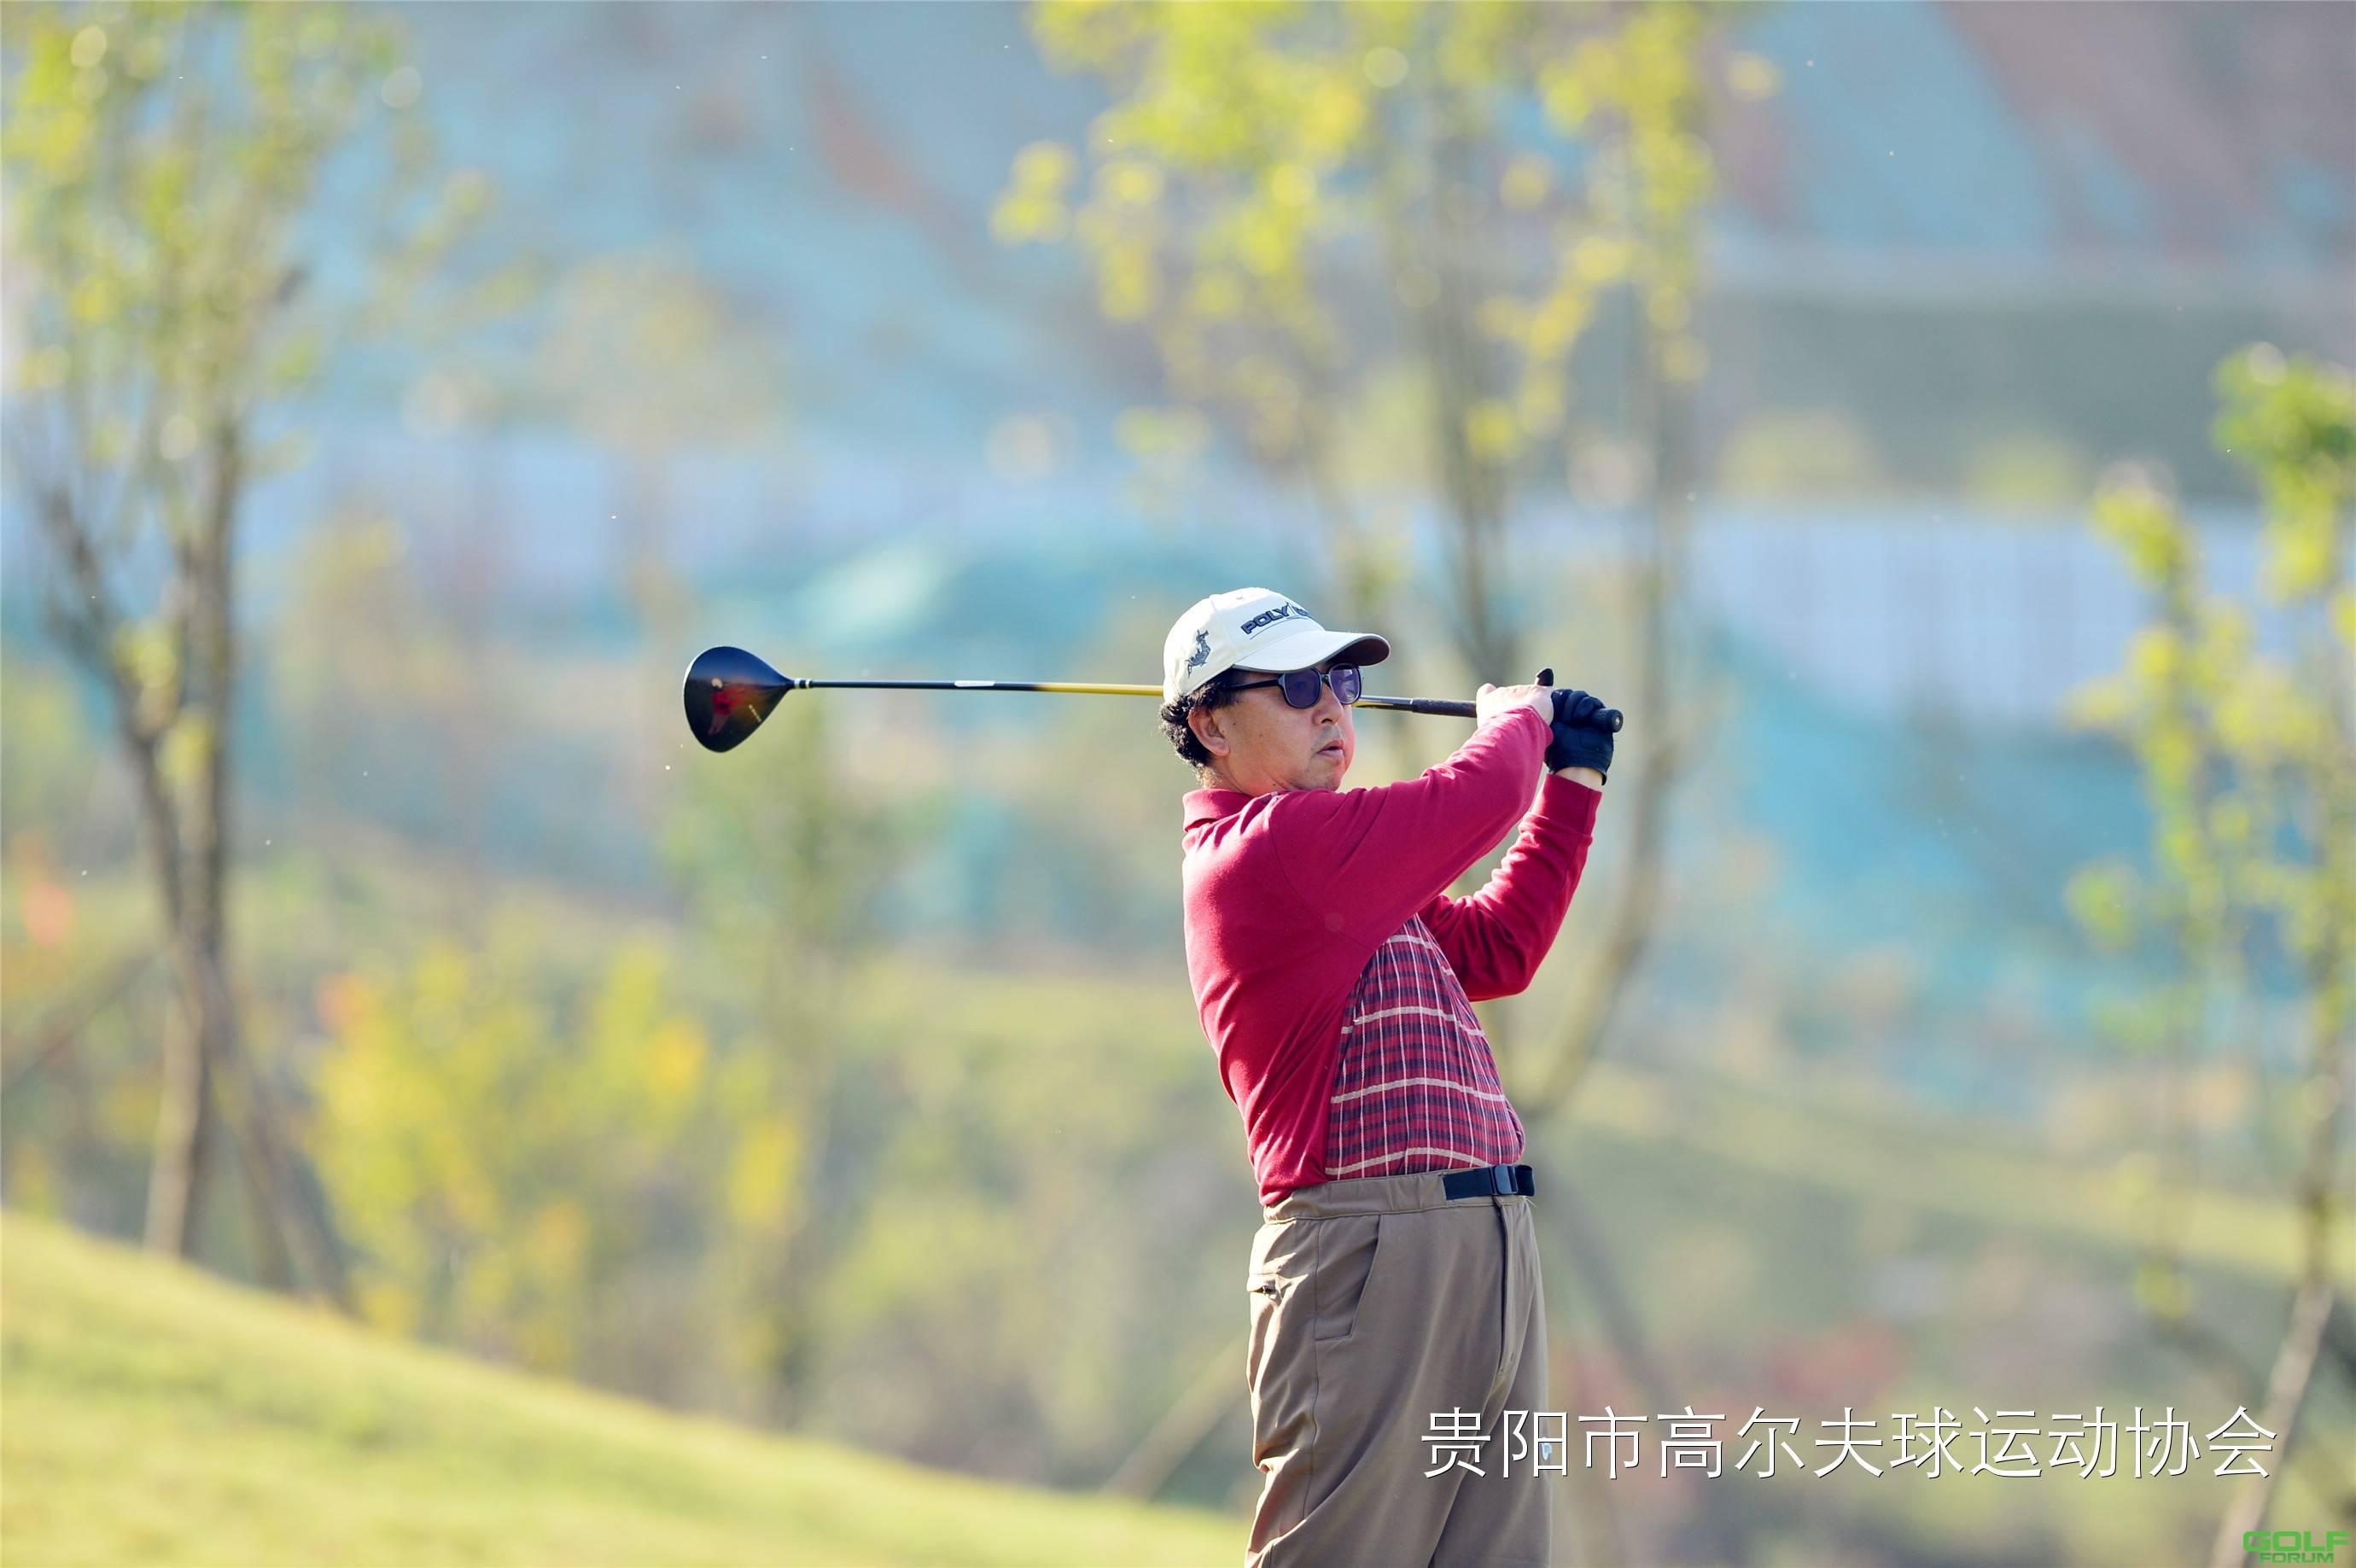 2014红华杯·贵州业余高尔夫锦标赛球员风采第三组丁劲松刘天佑 ...